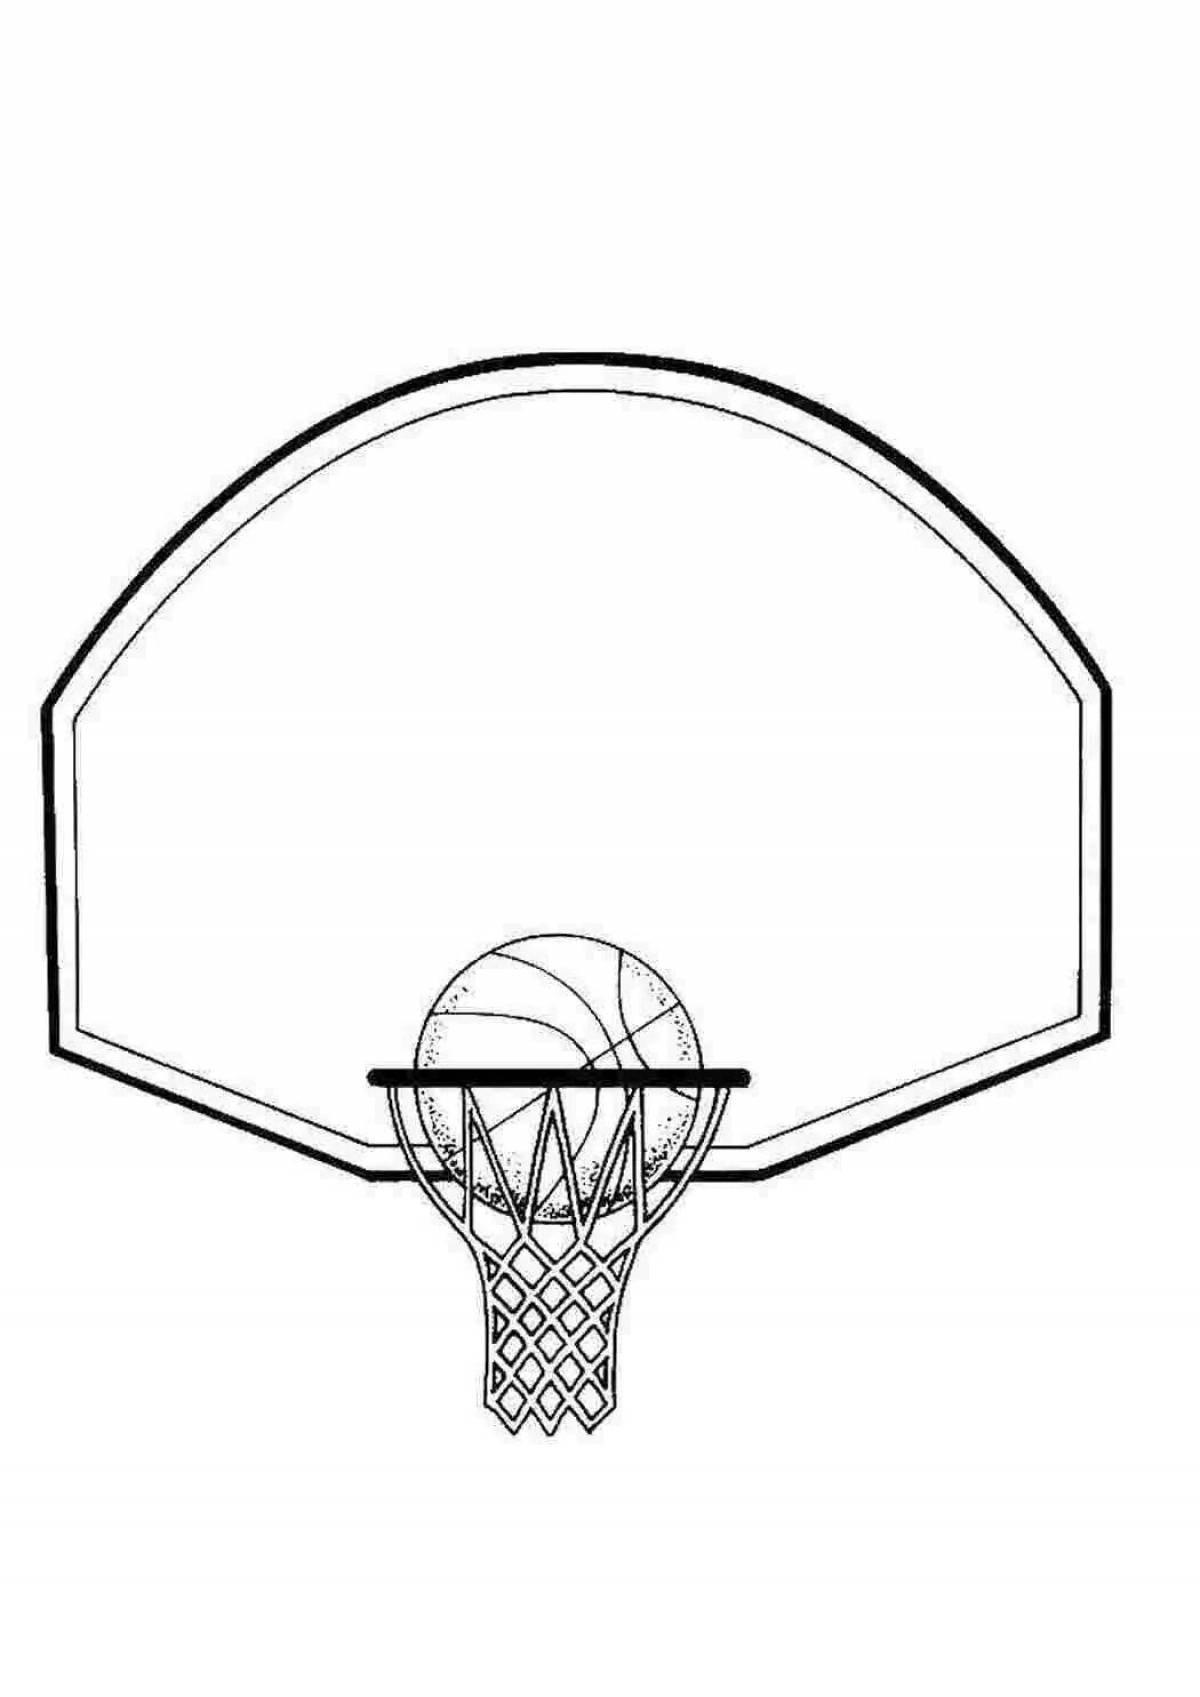 Великолепная страница раскраски баскетбольного кольца